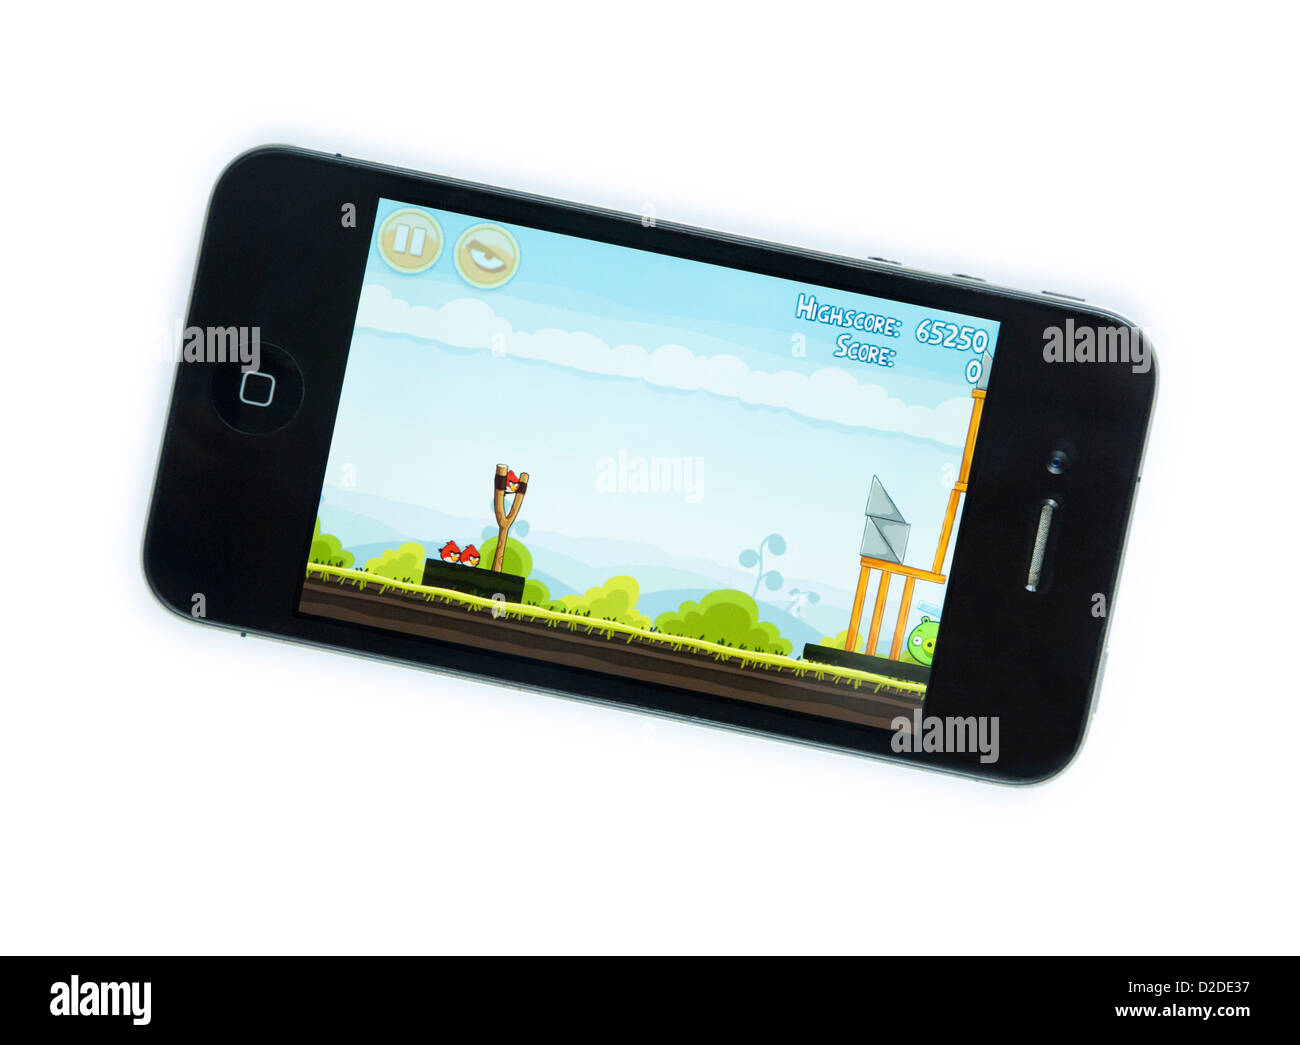 Angry Birds juego en el iPhone Foto de stock